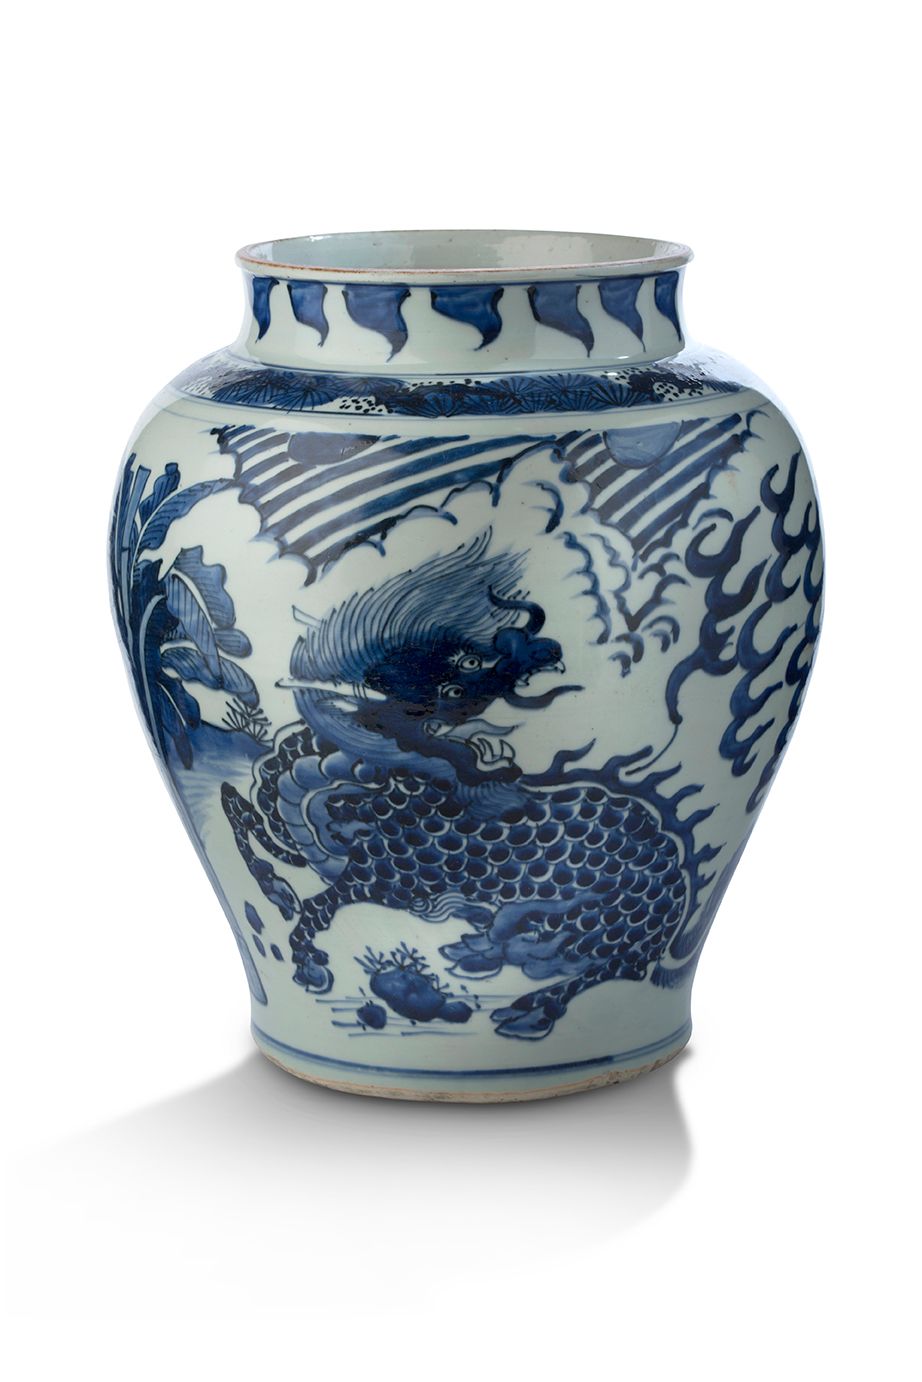 CHINE ÉPOQUE SHUNZHI (1643-1661) Bedeutender geschulterter Krug
Aus blau-weißem &hellip;